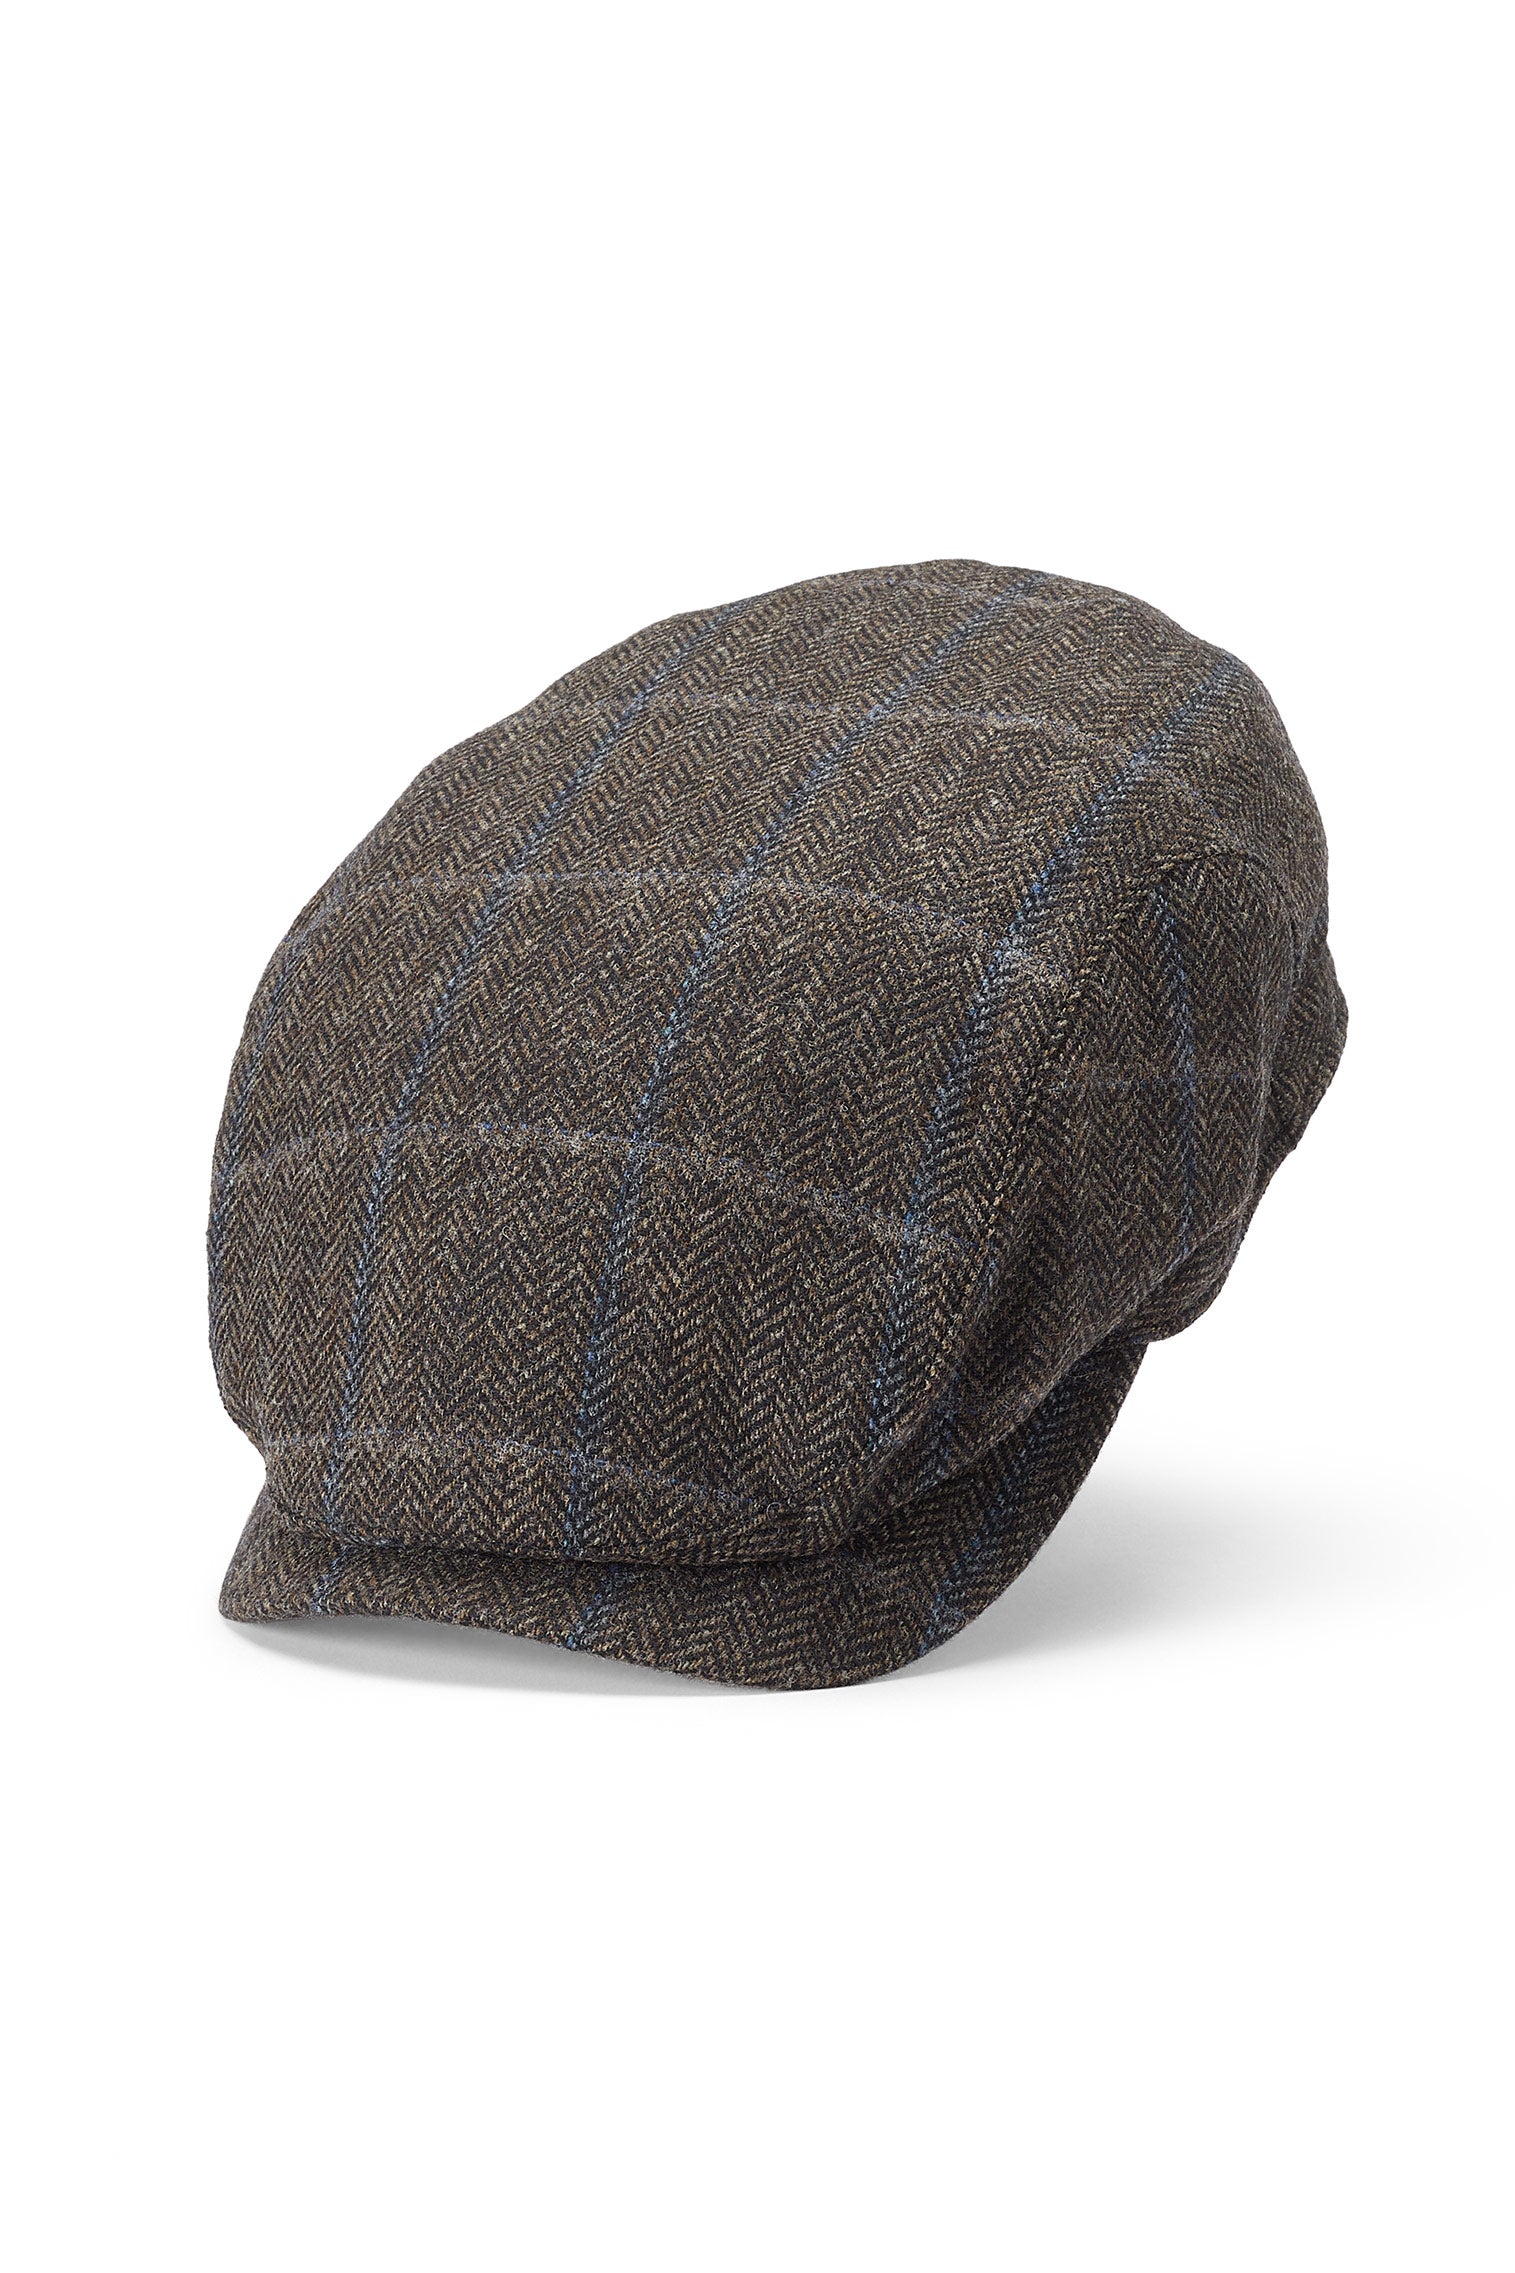 Lynton Brown Flat Cap - All Ready to Wear - Lock & Co. Hatters London UK